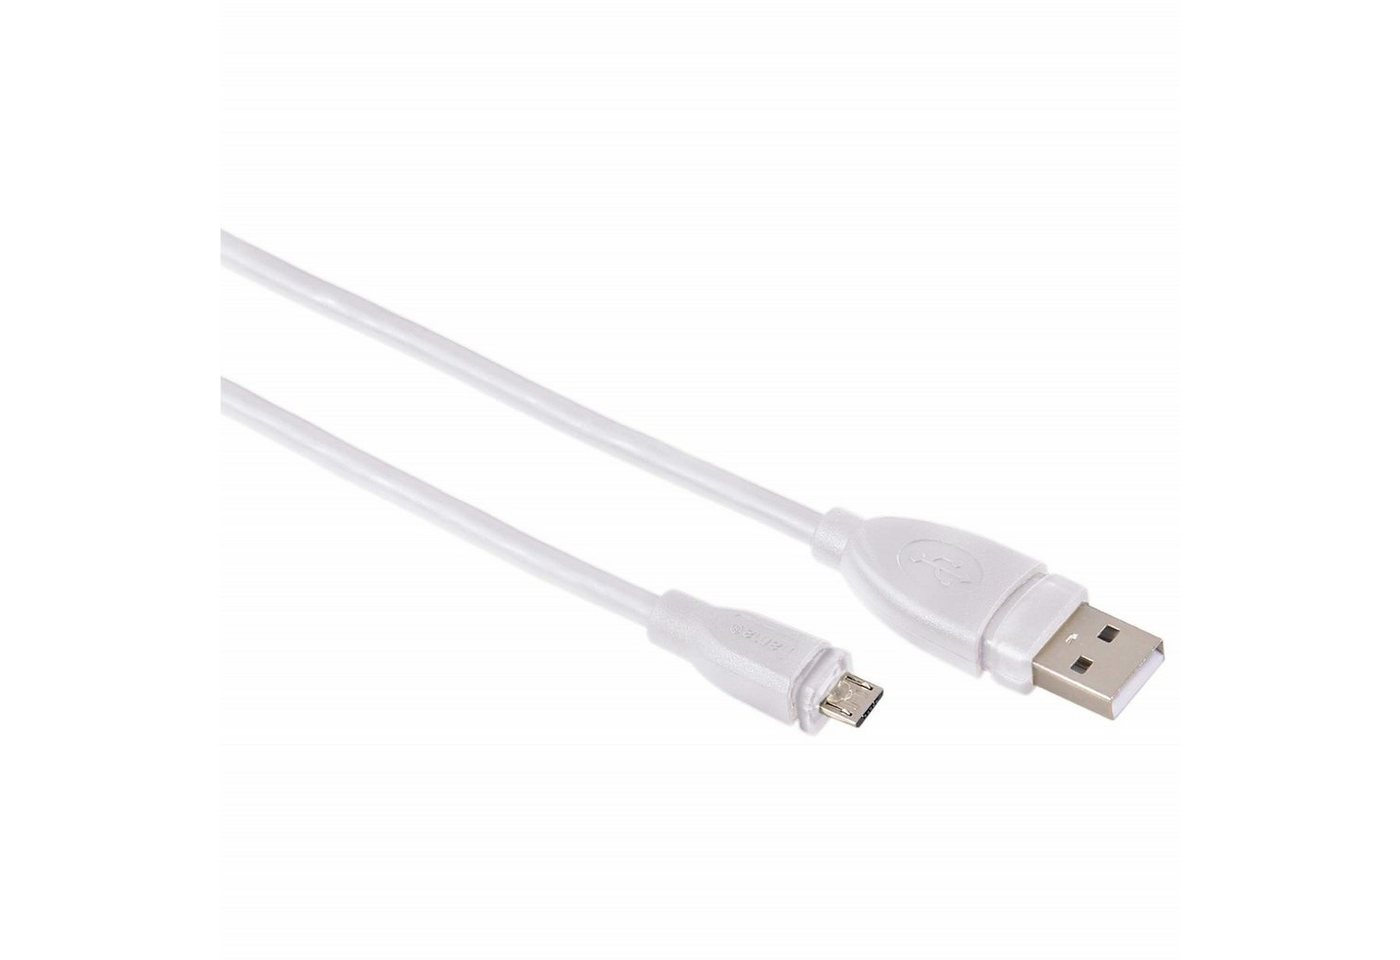 Hama 3m USB-Kabel Micro-B-Stecker Typ Micro-USB Weiß USB-Kabel, USB Typ A,USB Typ Micro-B, (300 cm), USB 2.0 Ladekabel und Datenkabel von Hama